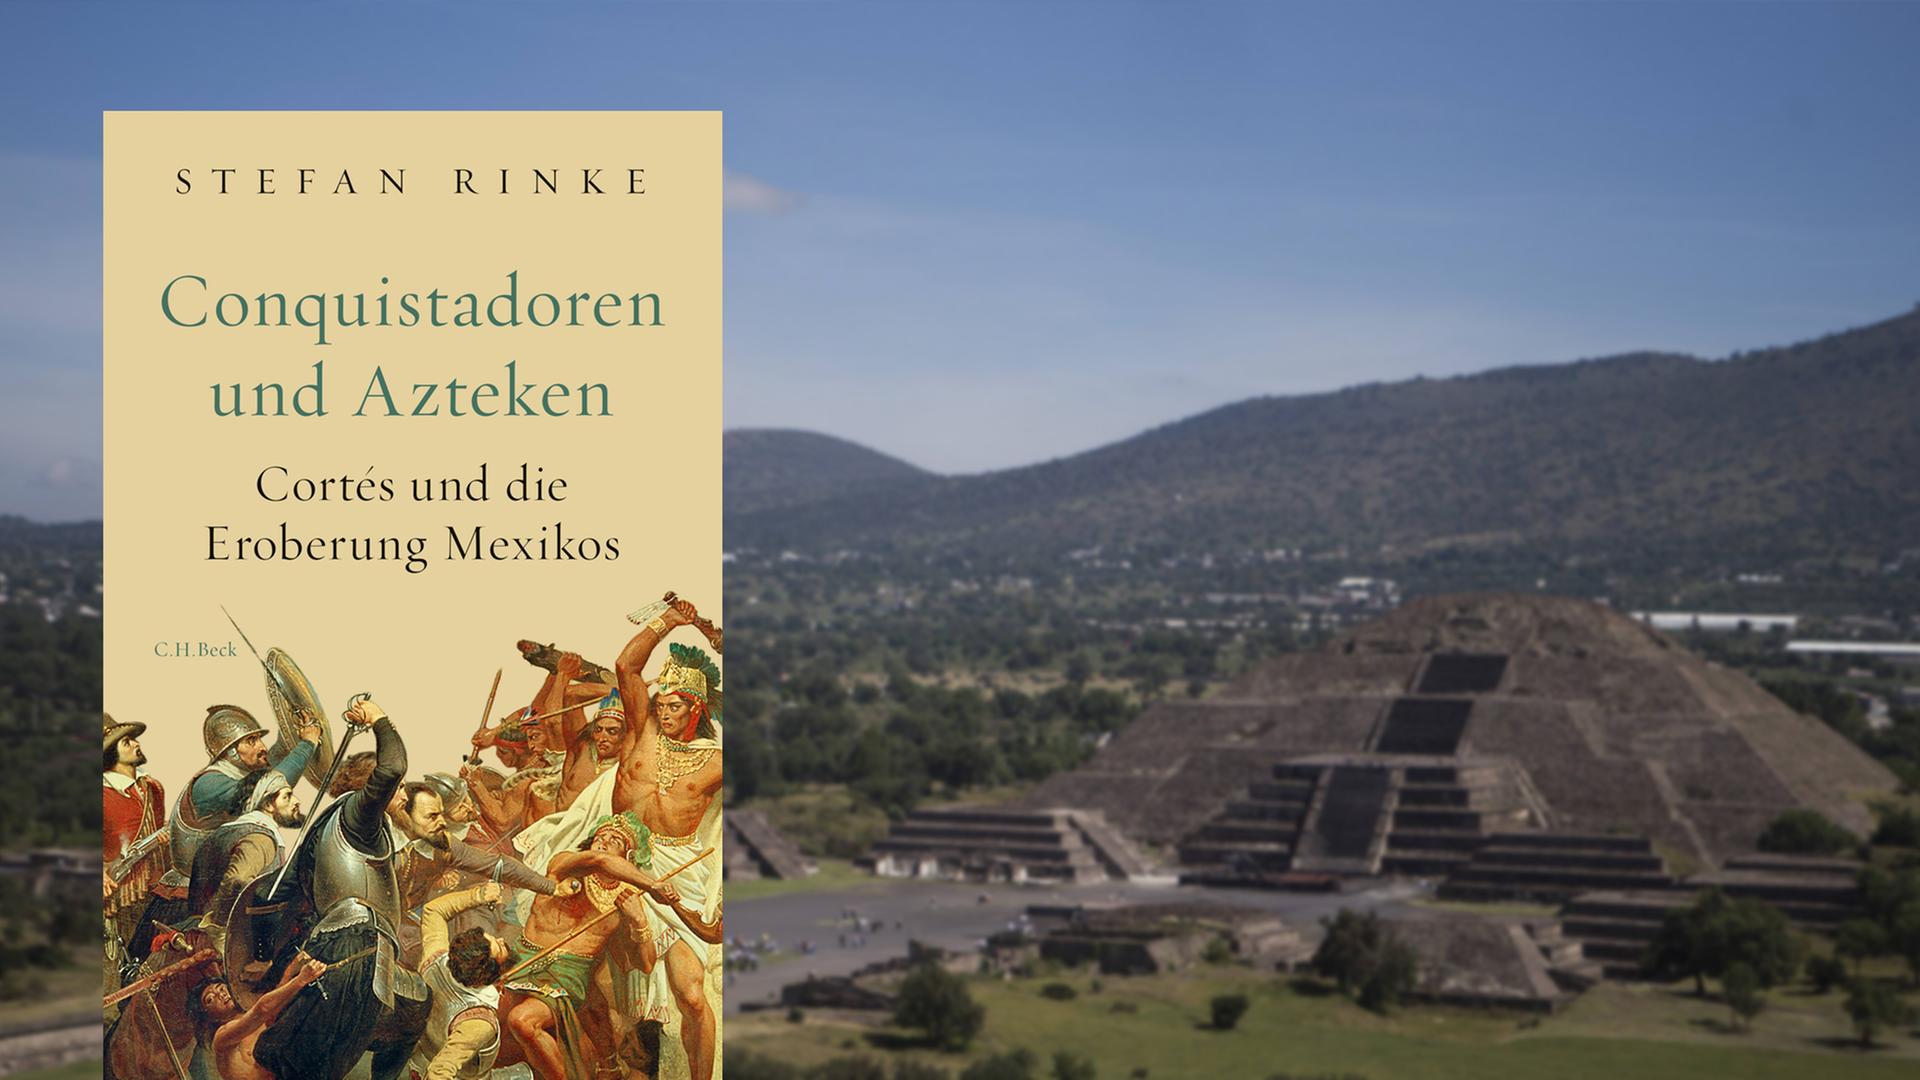 Auf dem Buch-Cover ist eine Kampfszene zwischen Conquistadoren und Azteken zu sehen, im Bildhintergrund ist eine Pyramide zu sehen